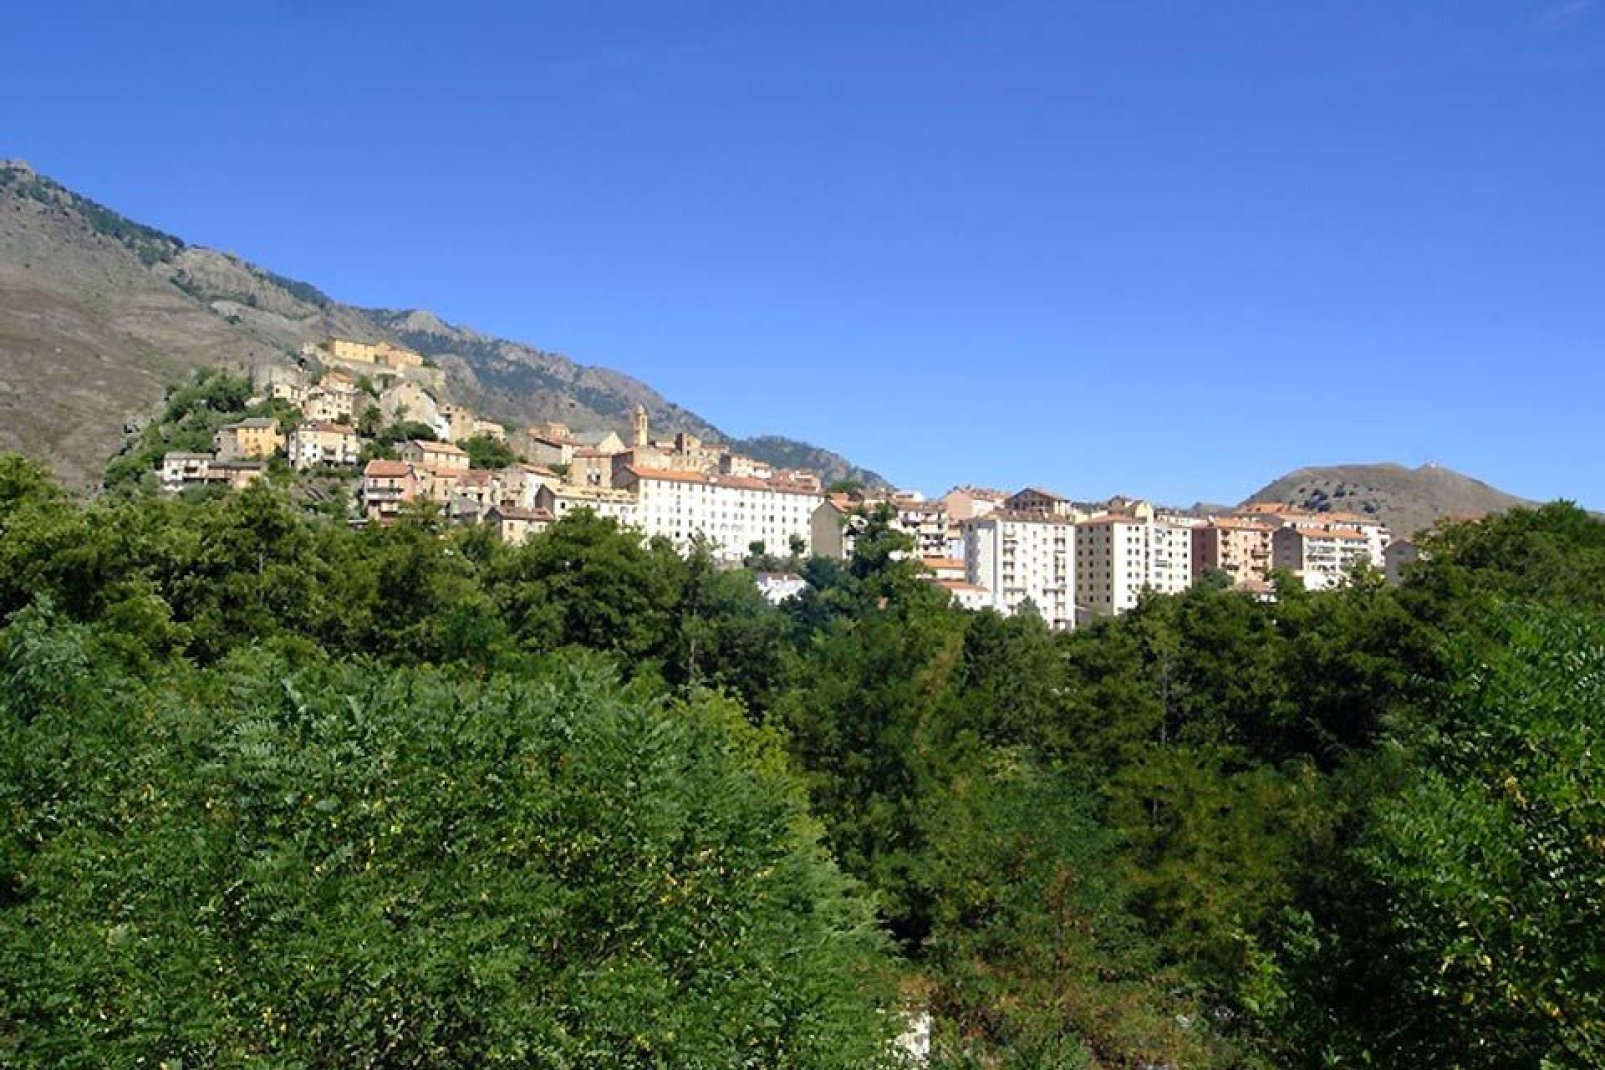 Corte se encuentra en el centro de Córcega, a 450 metros de altitud, entre Bastia y Ajaccio.